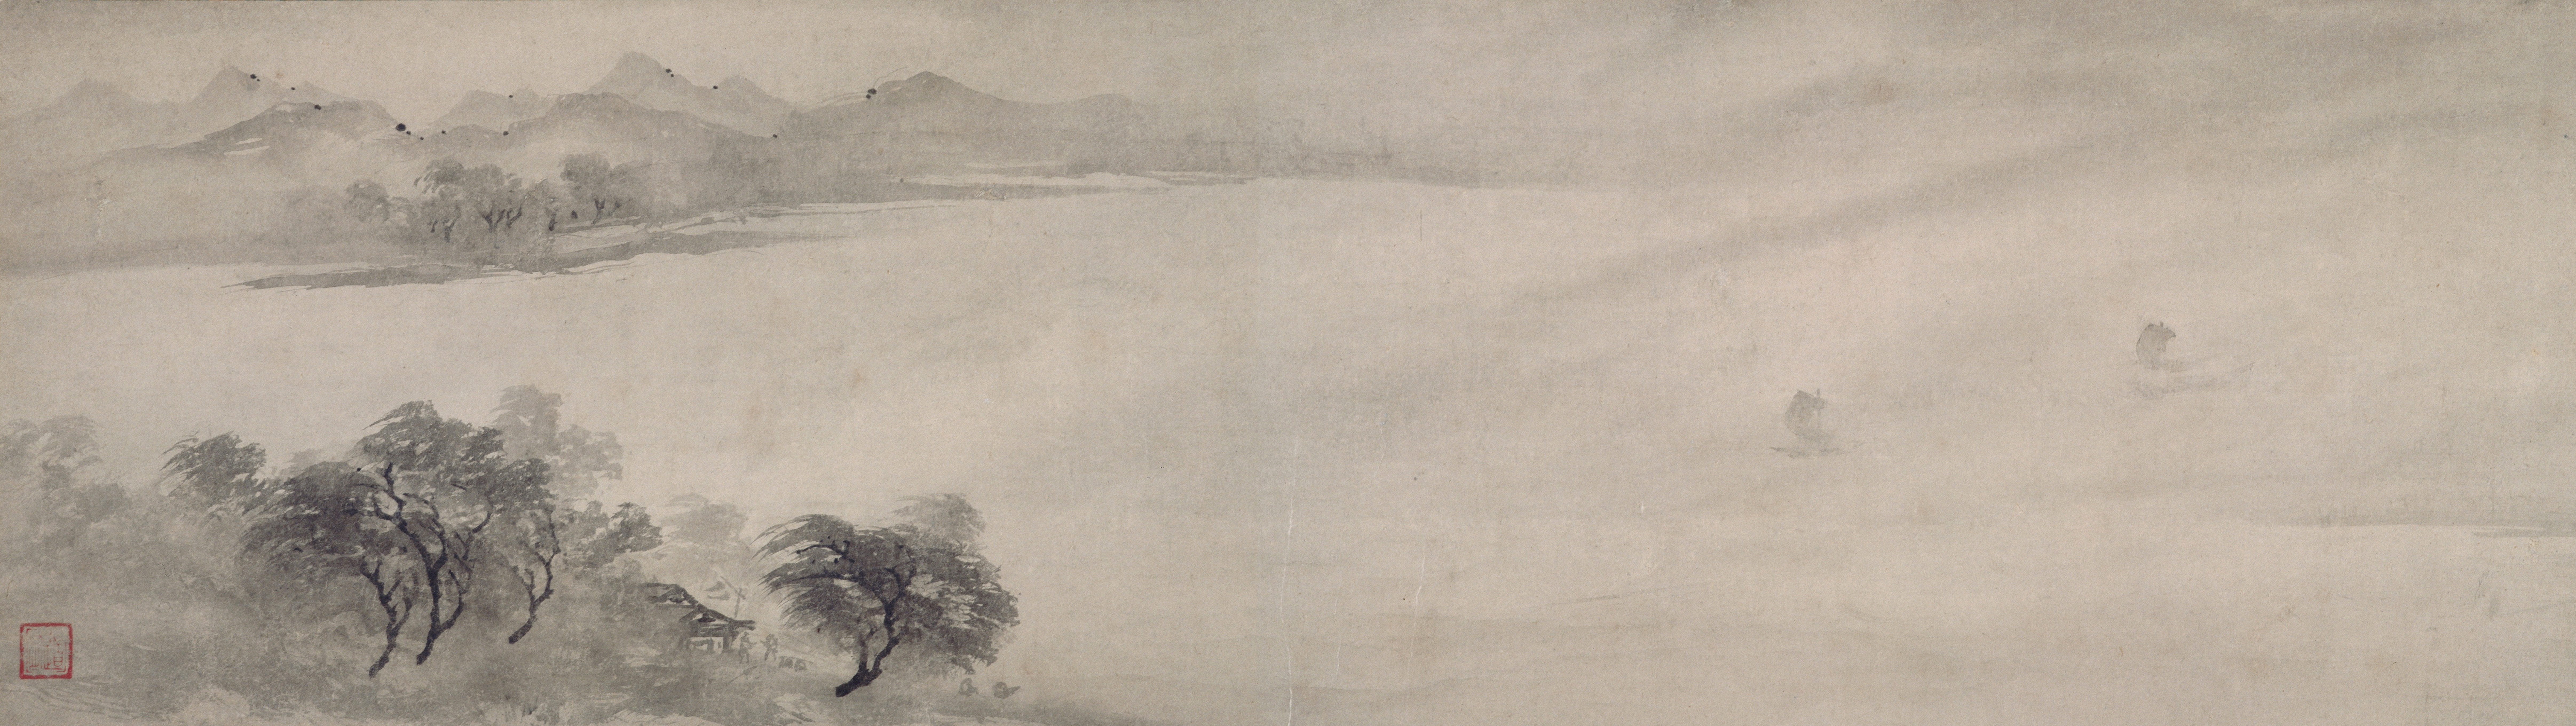 远浦归帆图    宋  牧溪  轴  纸本墨笔  32.3×103.6cm  日本京都国立博物館藏